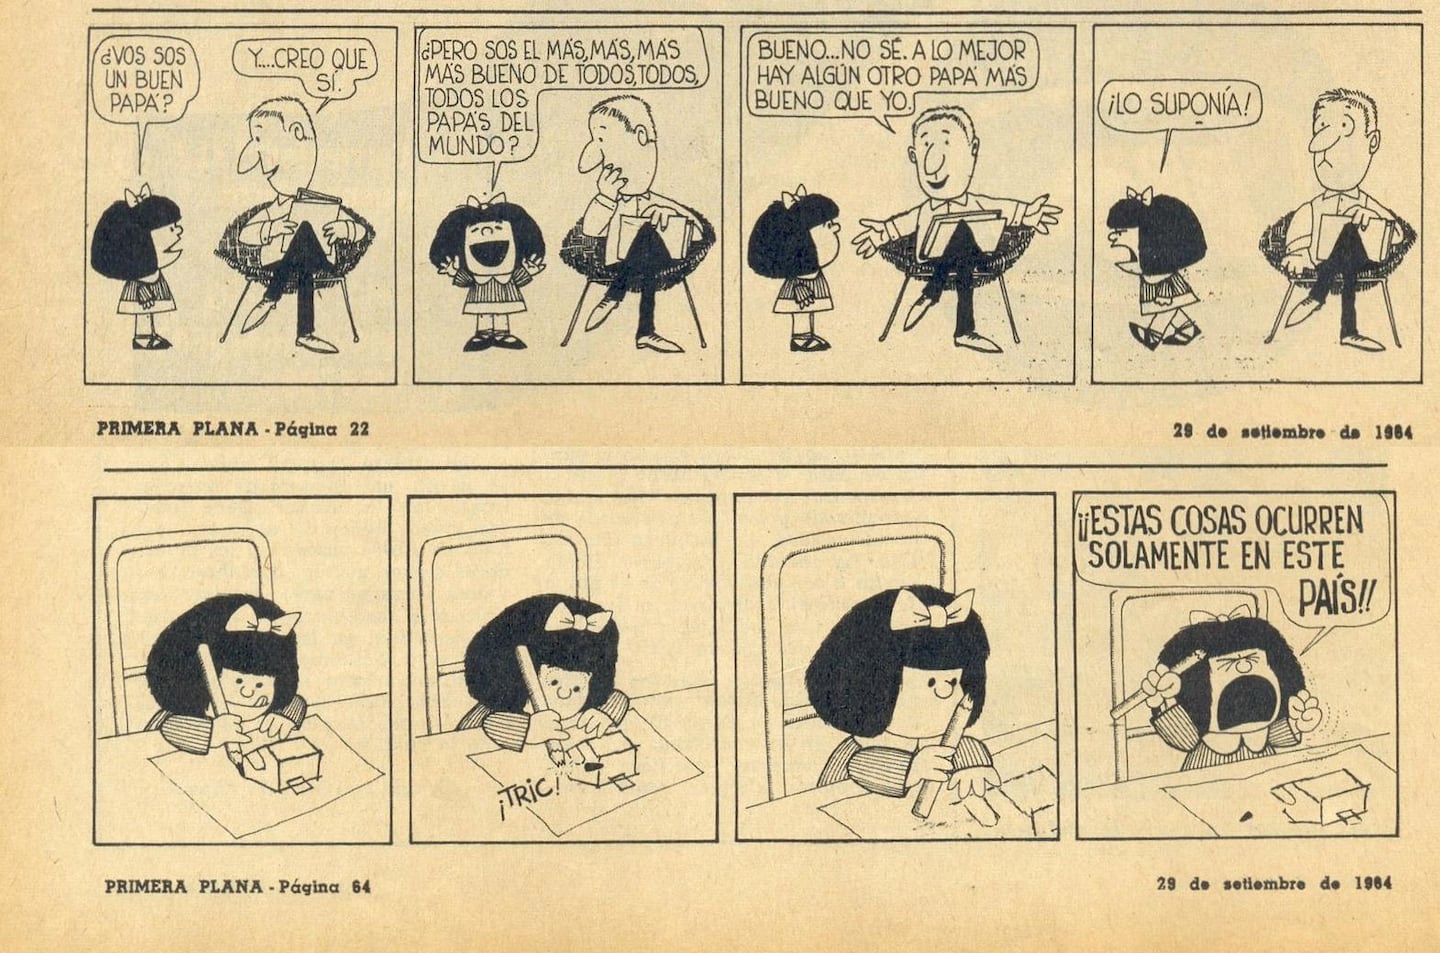 La primera aparición de Mafalda, el 29 de septiembre de 1964 en la revista Primera Plana.